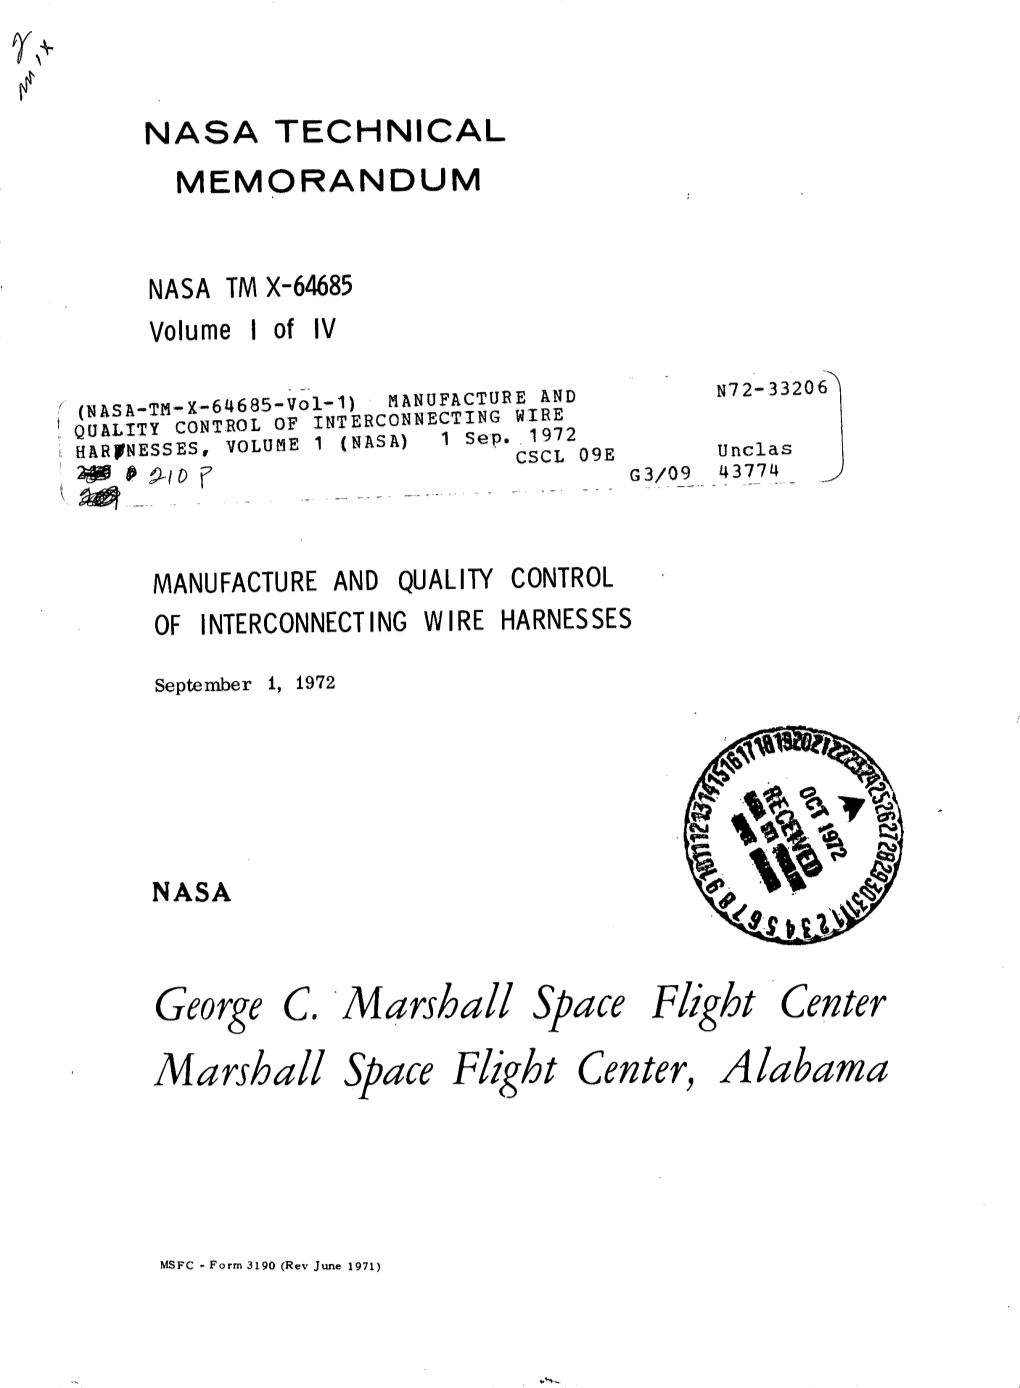 George C. Marshall Marshall Space Flight